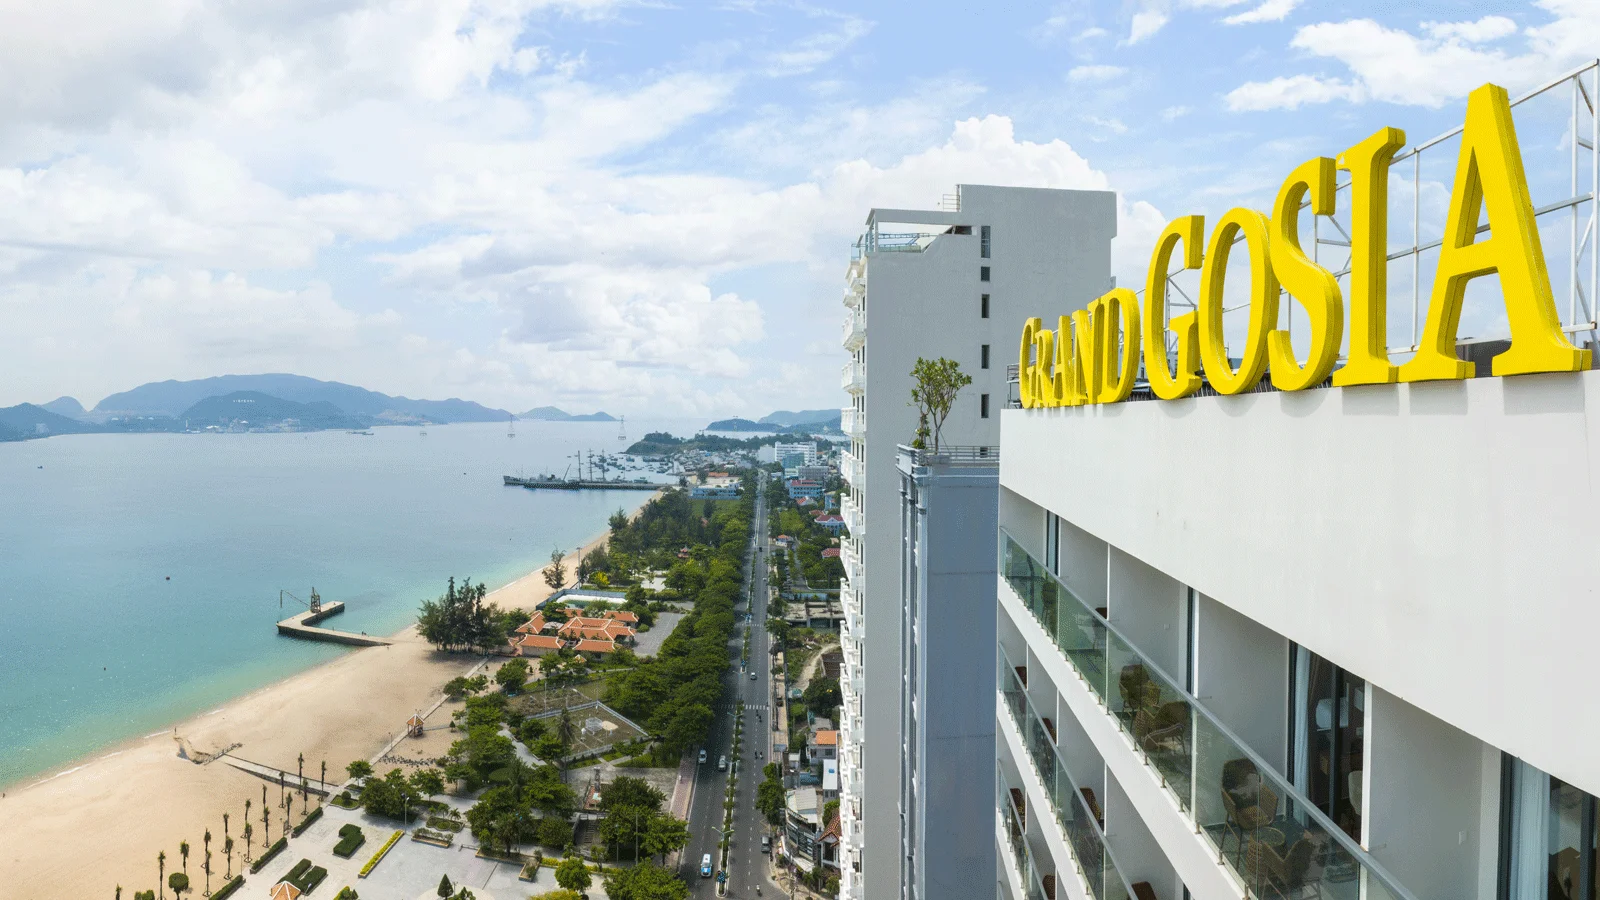 Combo Nha Trang - Grand Gosia Hotel Nha Trang 3 ngày 2 đêm